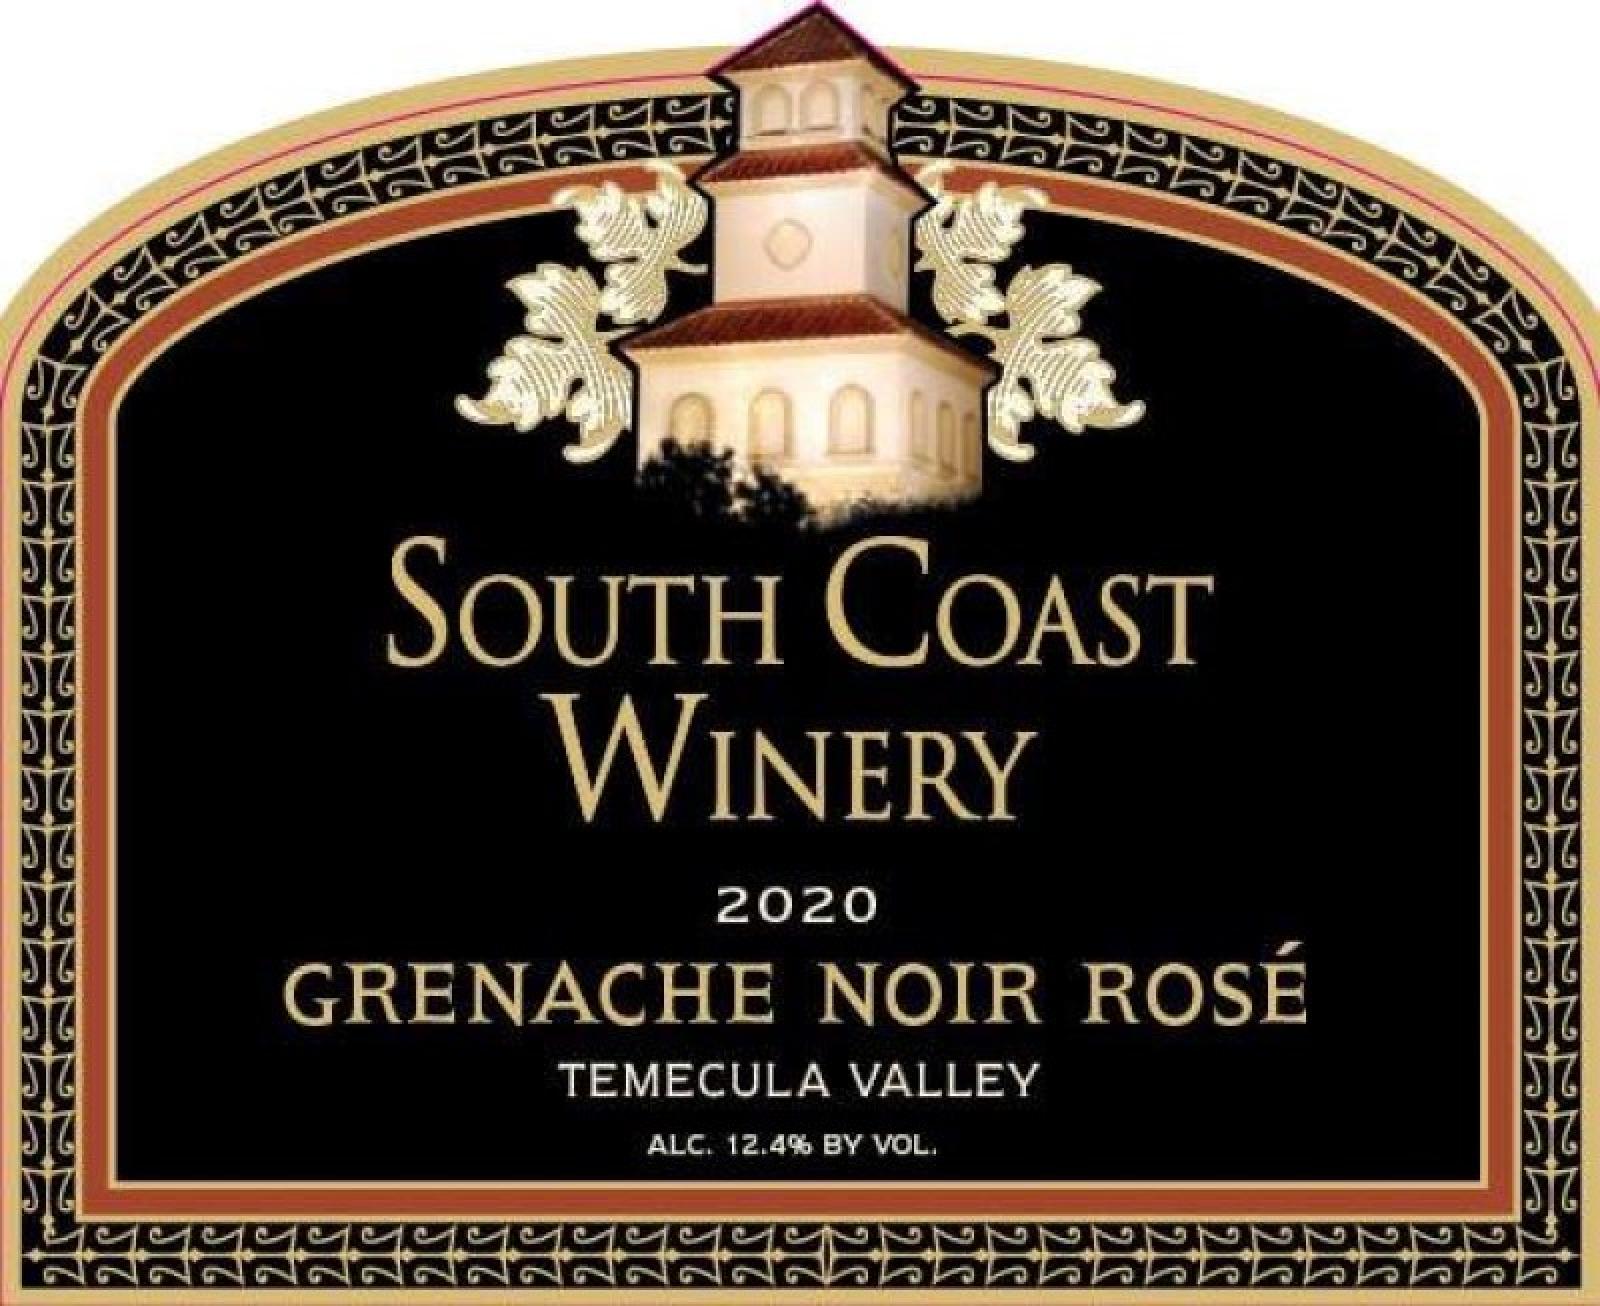 South Coast Grenache Noir Rose 2020